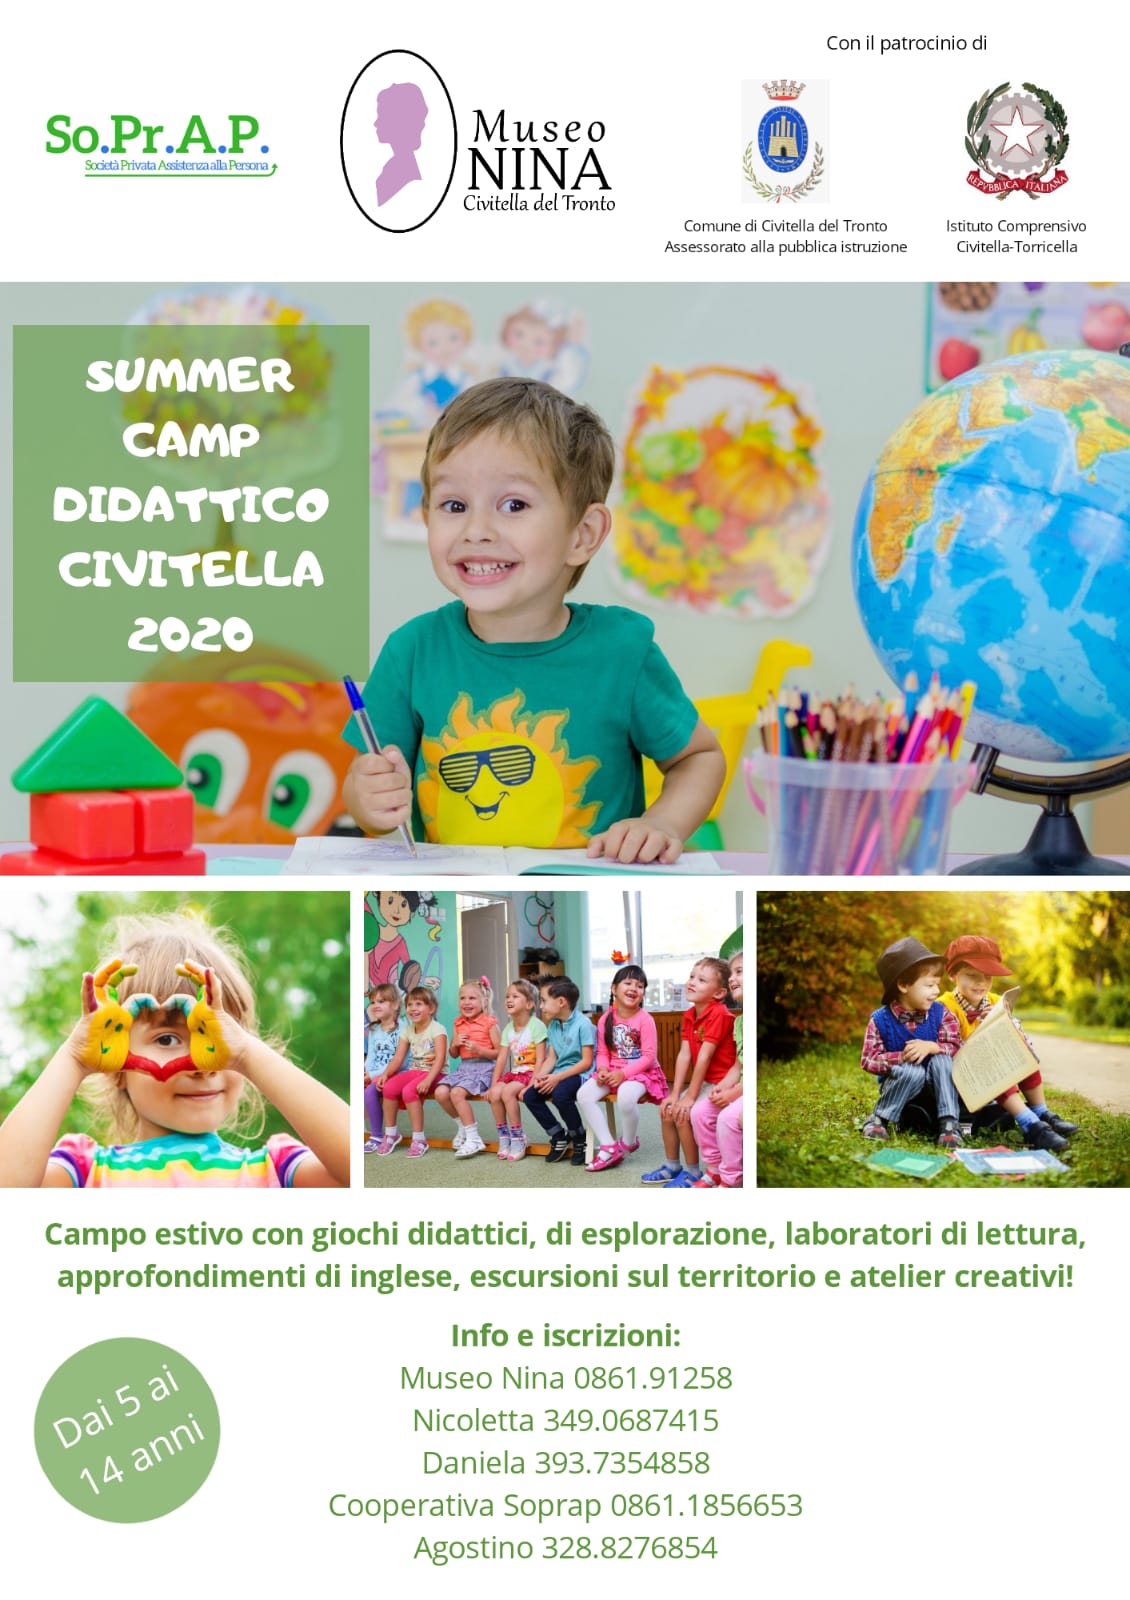 Civitella del Tronto. Al via il “Summer Camp Civitella 2020”: campus estivo per bambini e ragazzi